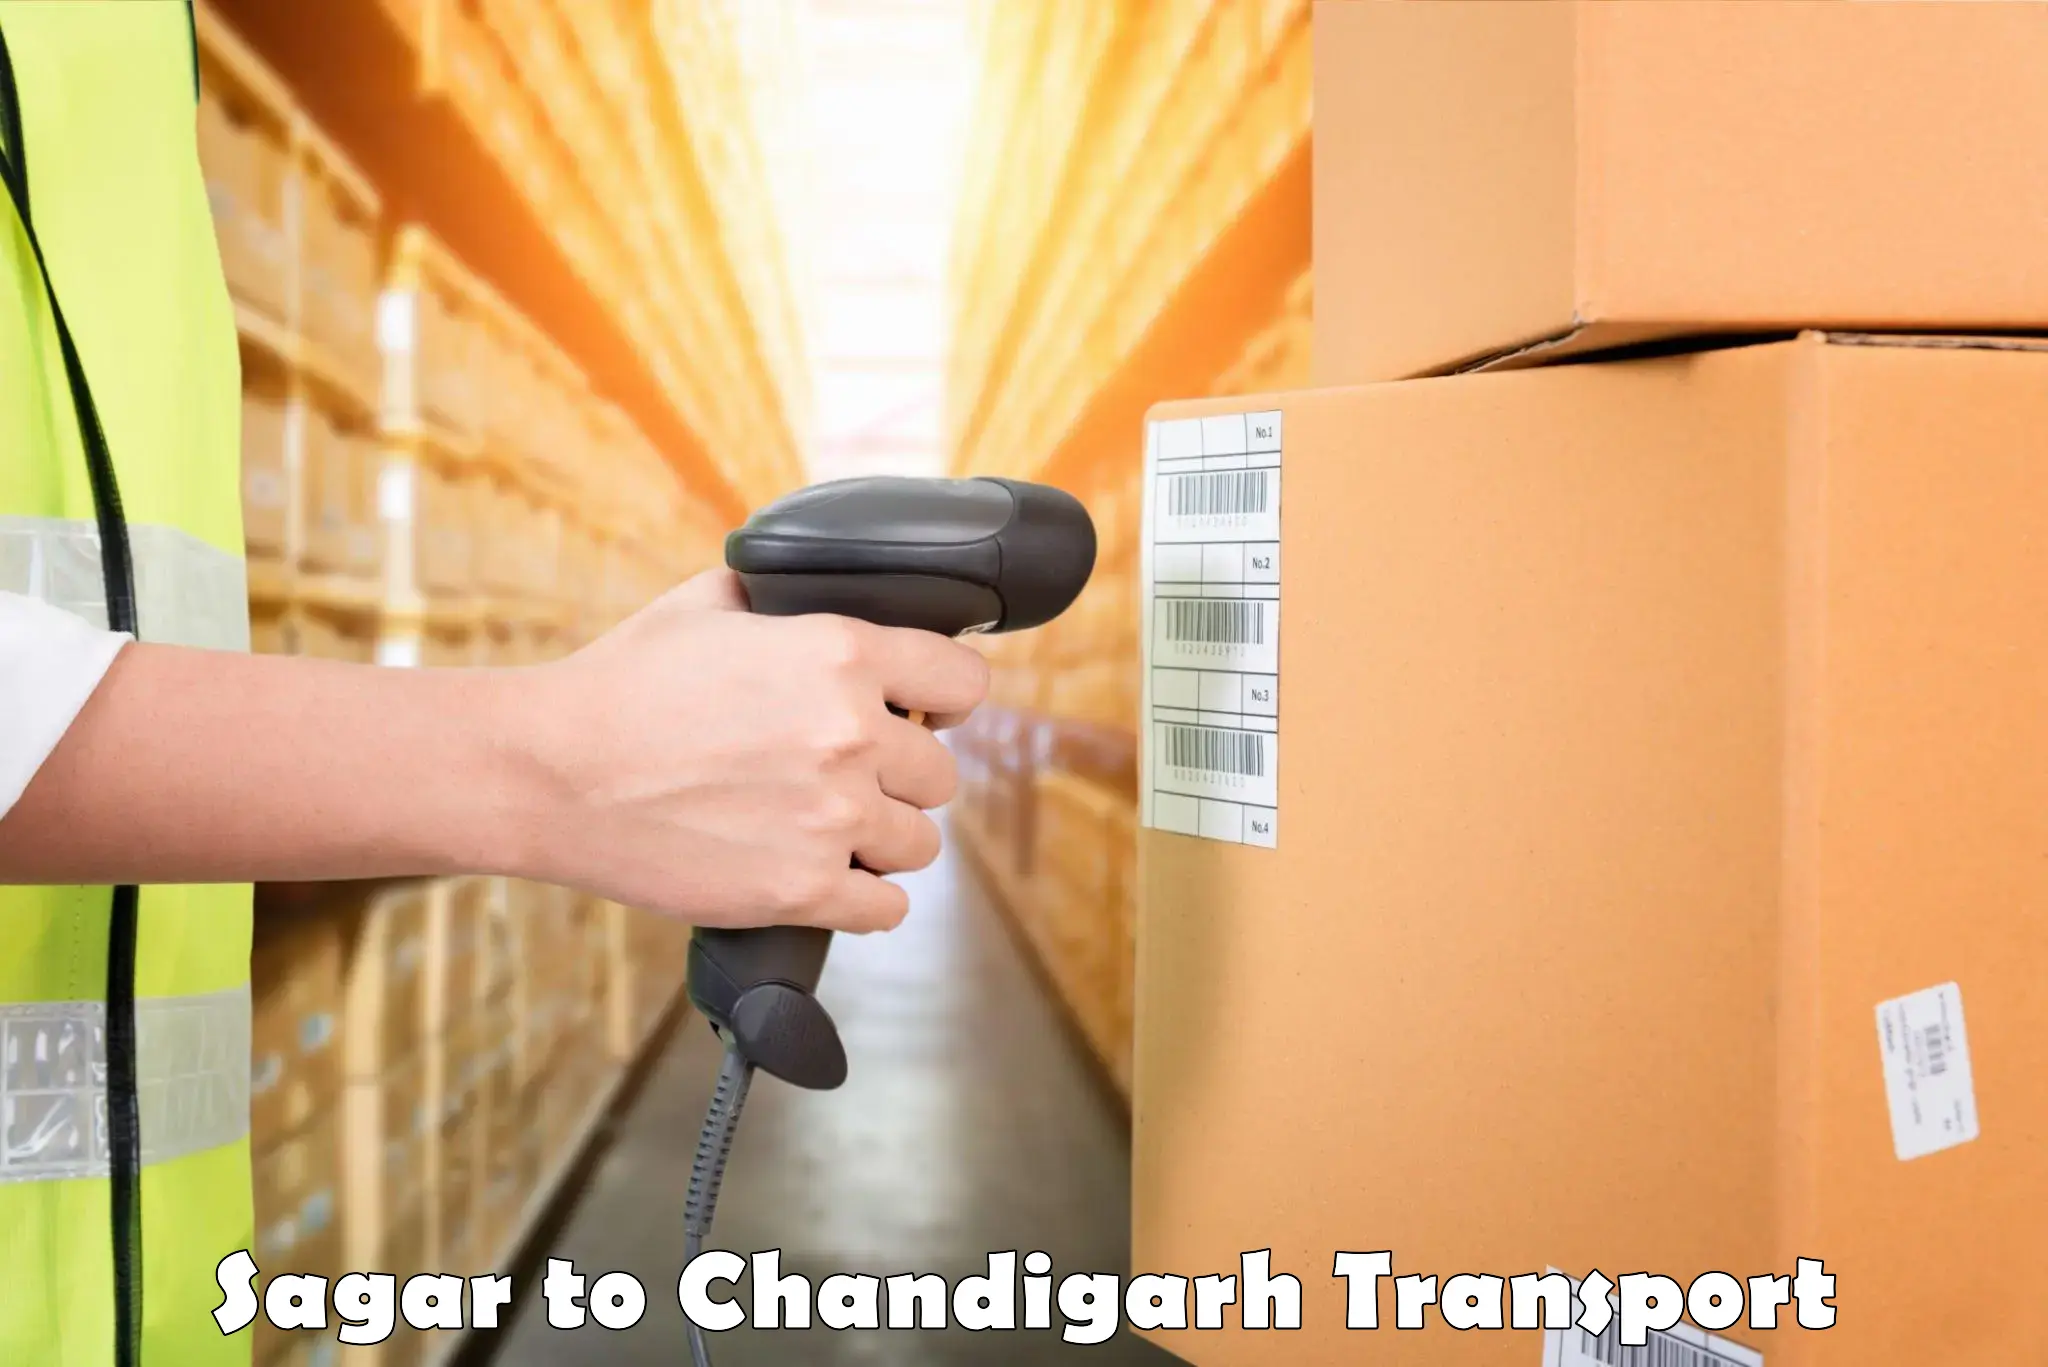 Online transport service Sagar to Chandigarh